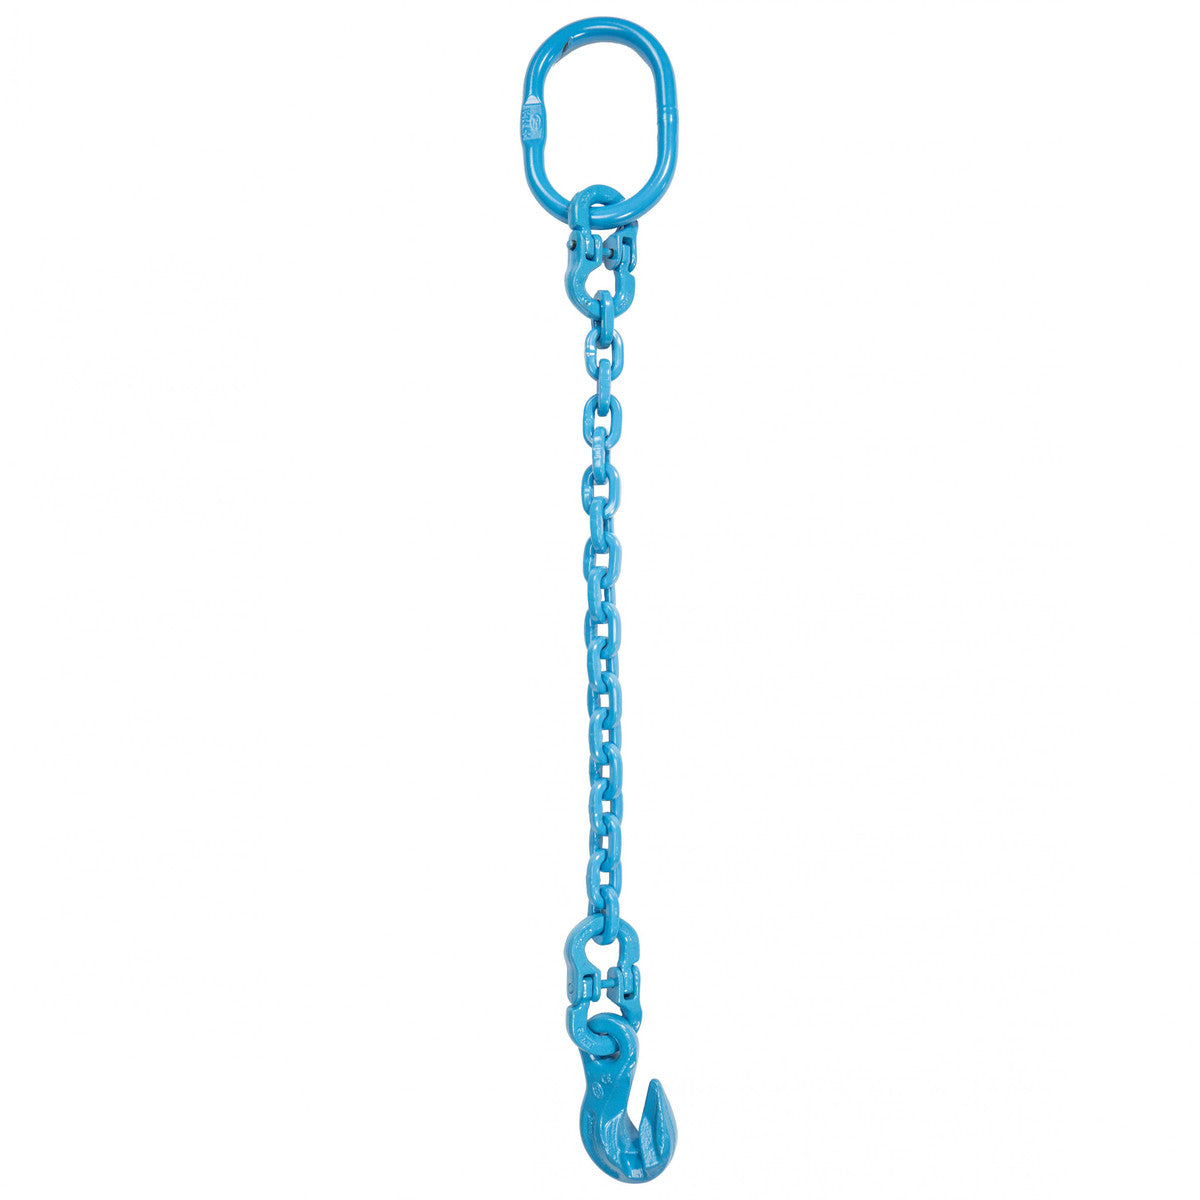 9/32" x 12' - Pewag Single Leg Chain Sling w/ Grab Hook - Grade 120